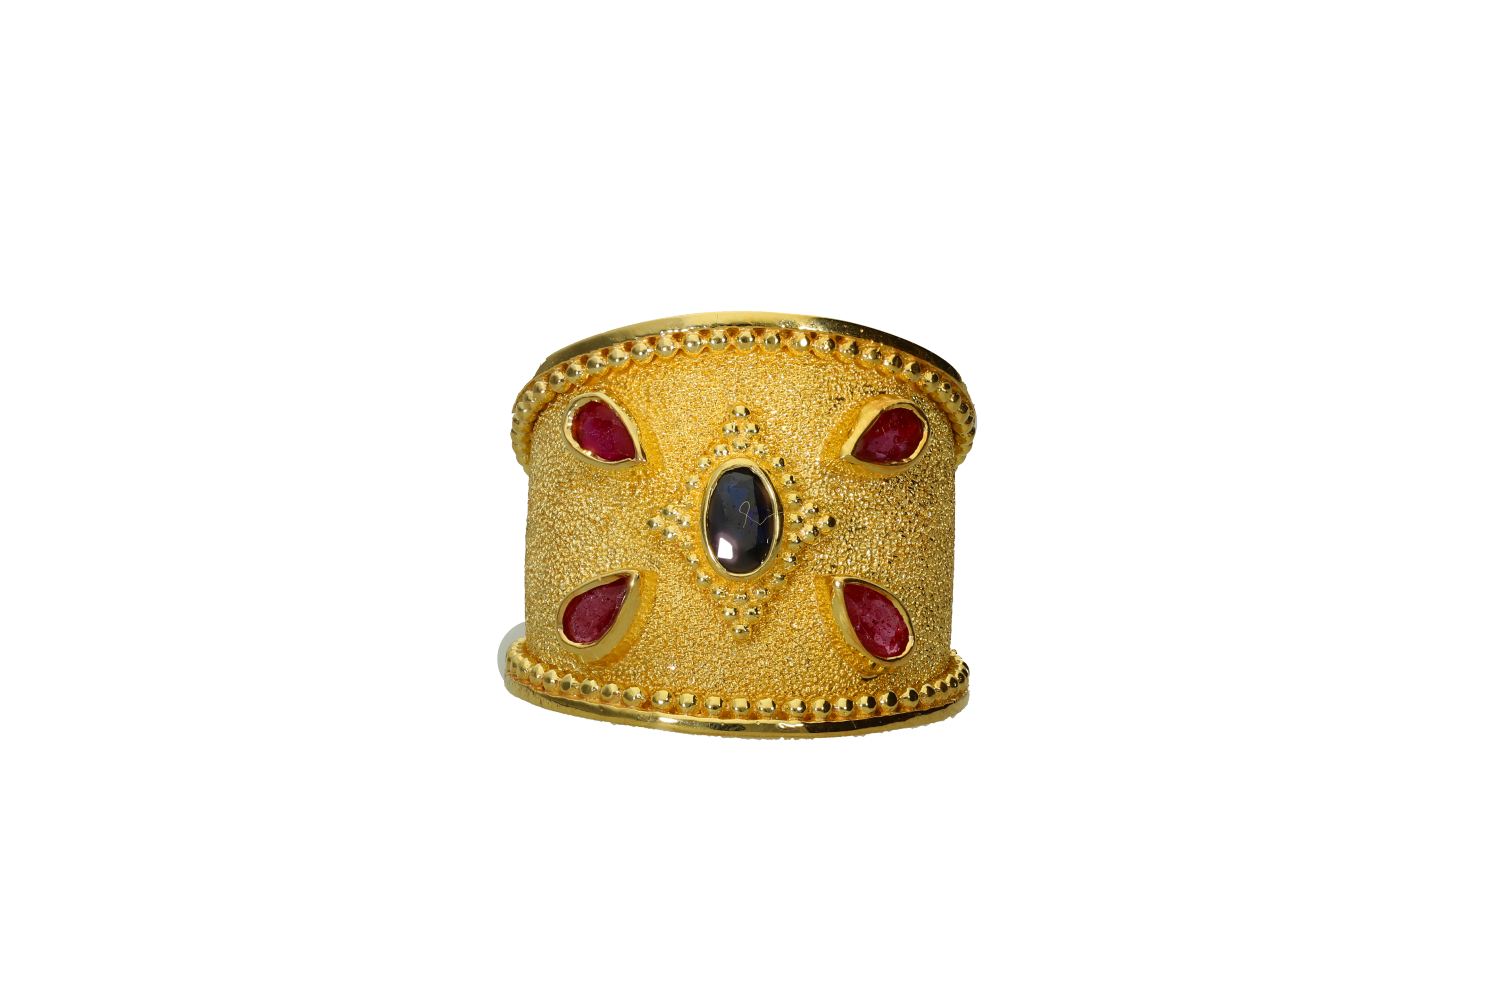 Δακτυλίδι βυζαντινό χειροποίητο σε ασήμι 925°, επιχρυσωμένο με κοκκίδωση και ορυκτές πέτρες.